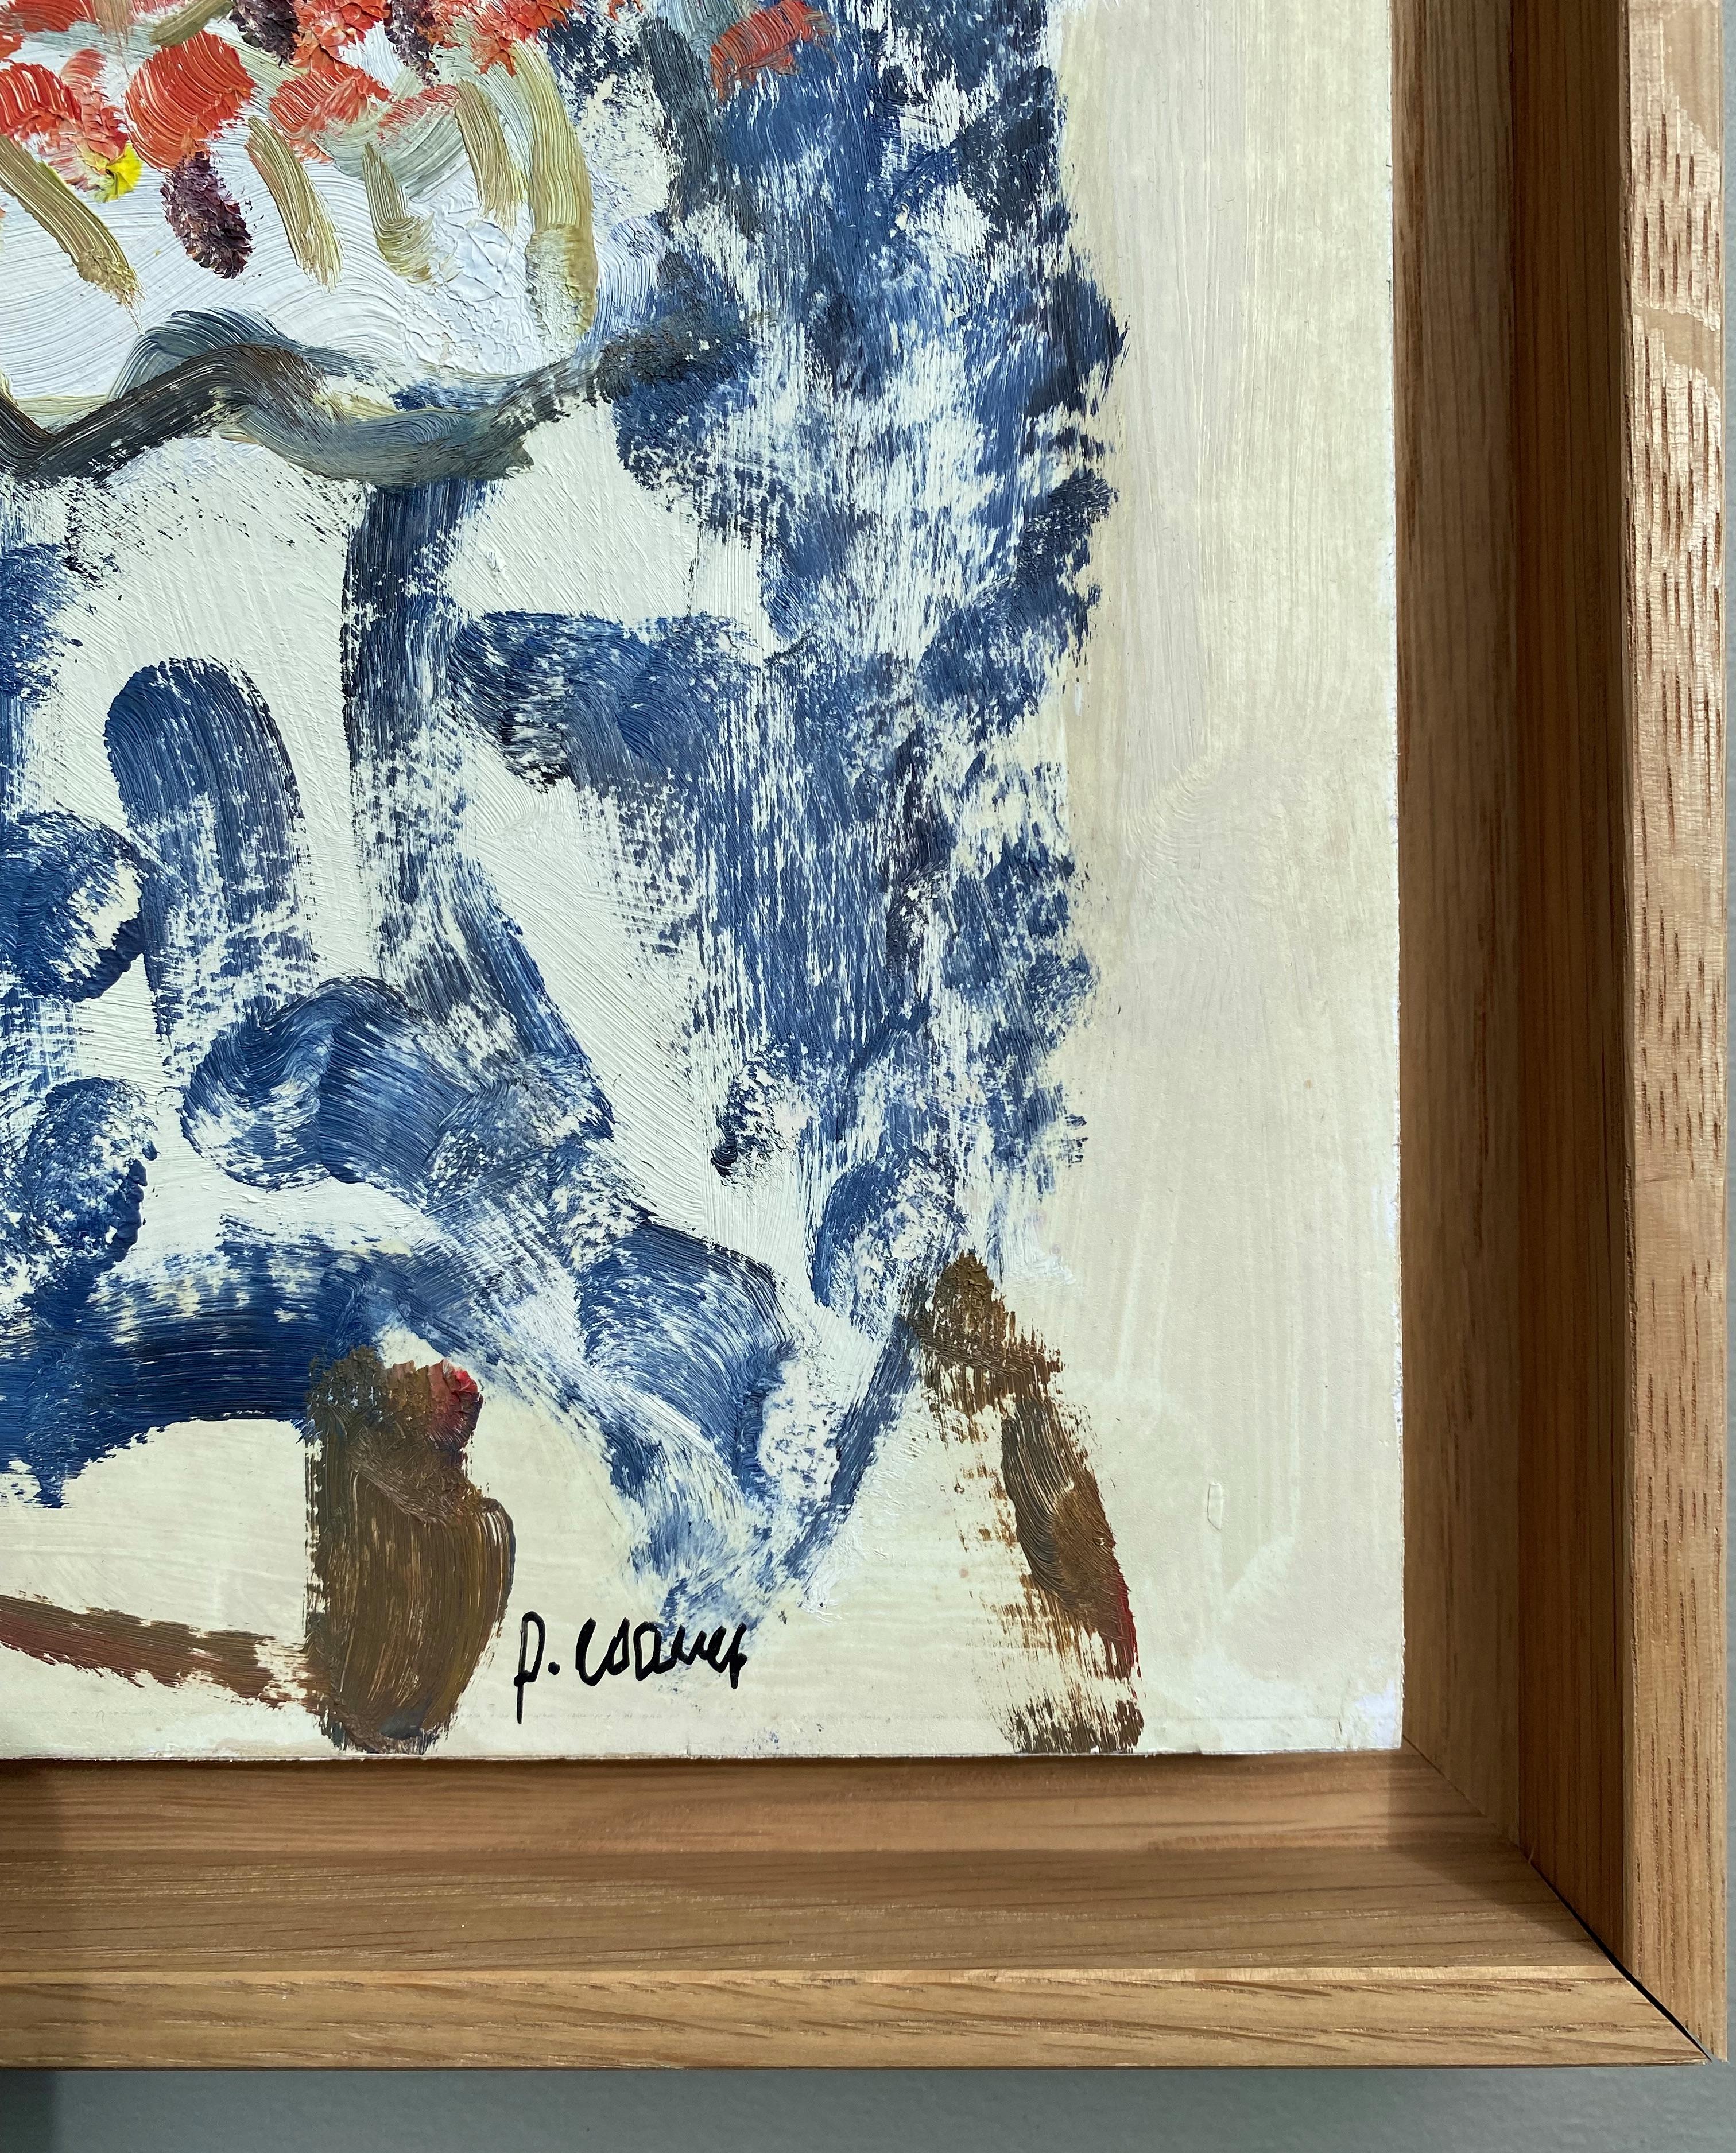 L'étole aux cerises/Blue stole with cherries - French School Painting by Pierre Coquet